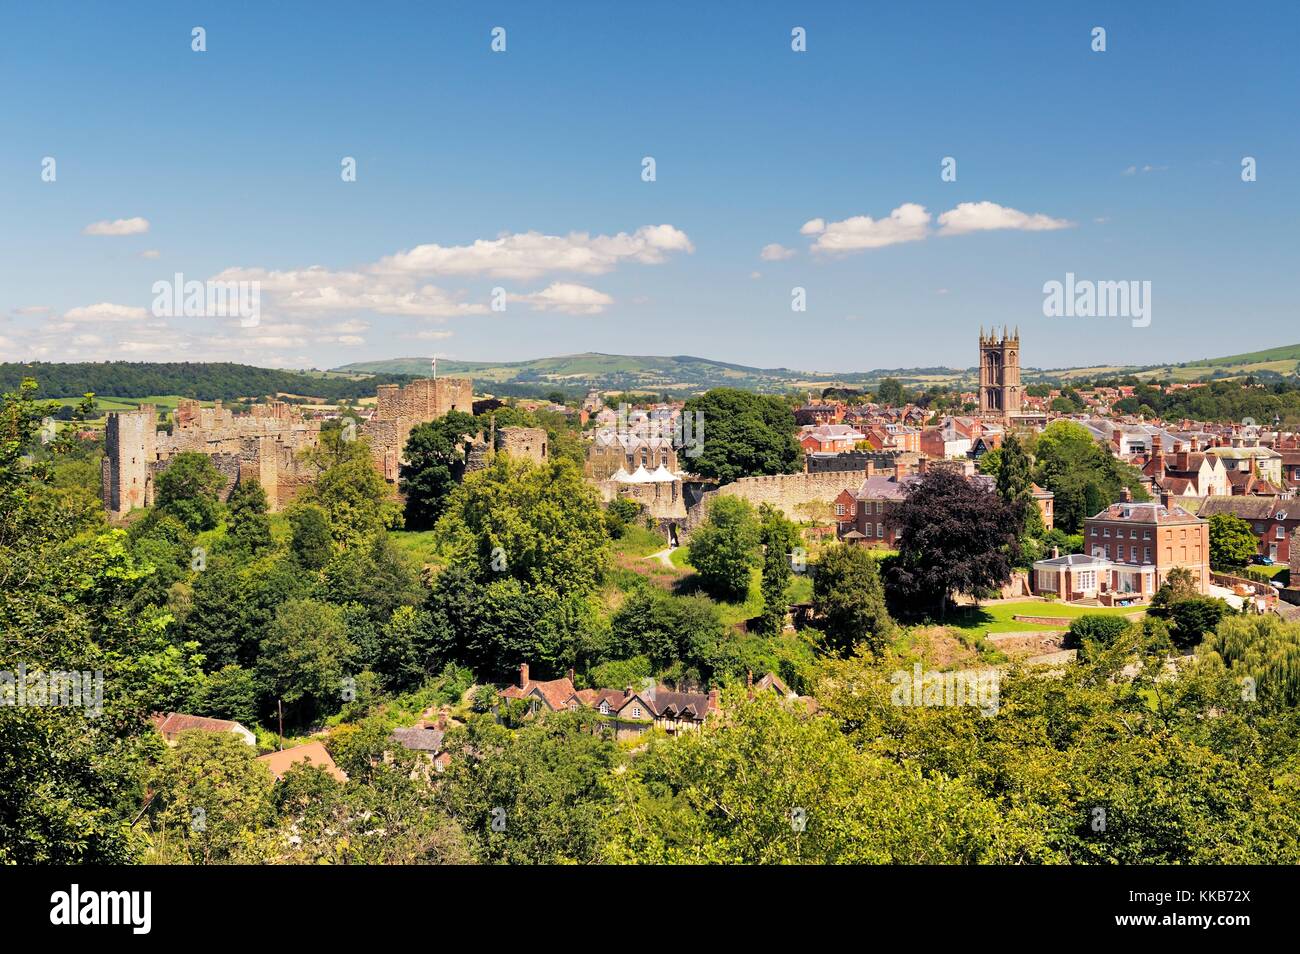 Nord-Ost über die mittelalterliche Burg und Markt Stadt Ludlow, Shropshire, England, UK Stockfoto